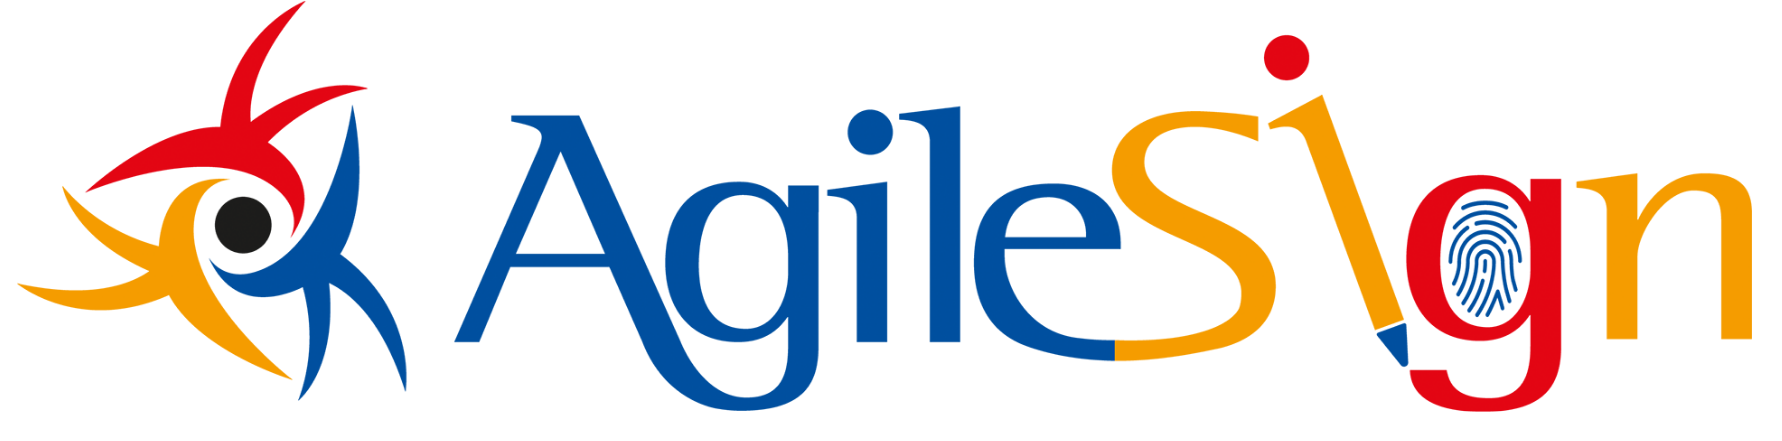 Webinar 24.11.2021 | Collabora in digitale con i tuoi clienti: firma con AgileSign!